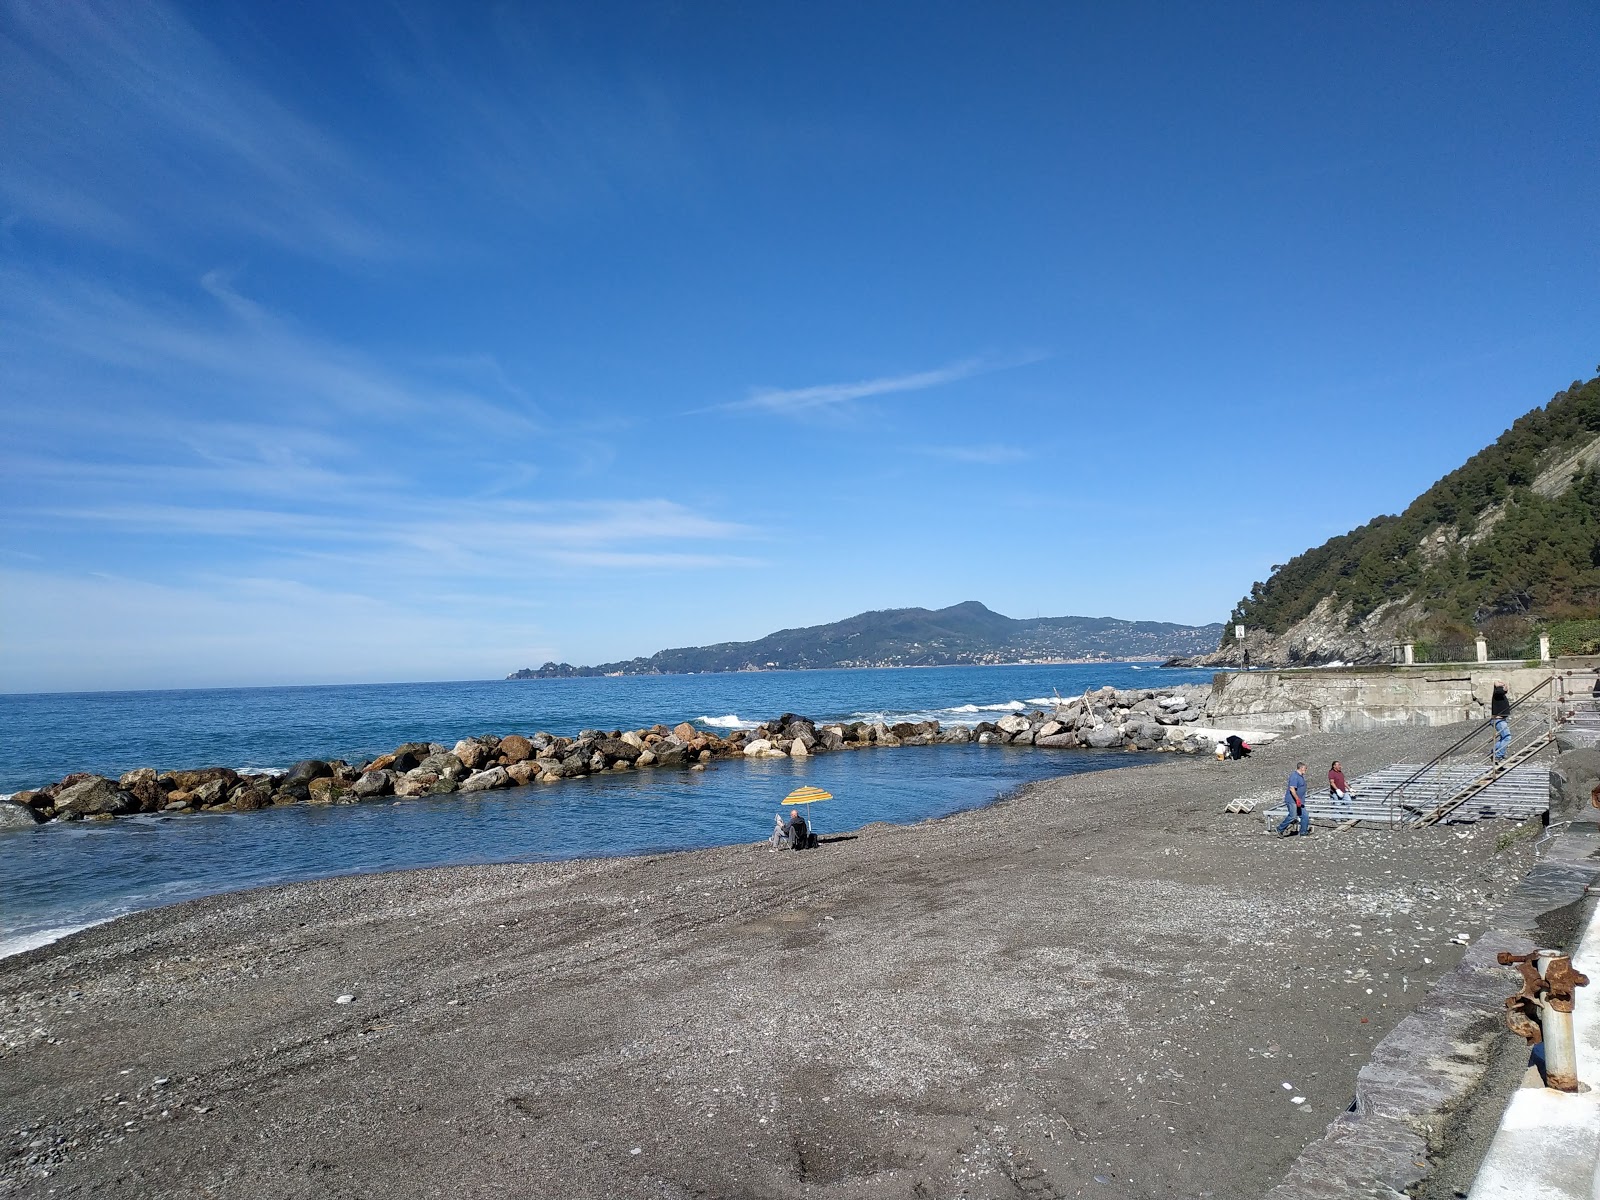 La spiaggia di Preli a Chiavari的照片 带有蓝色纯水表面